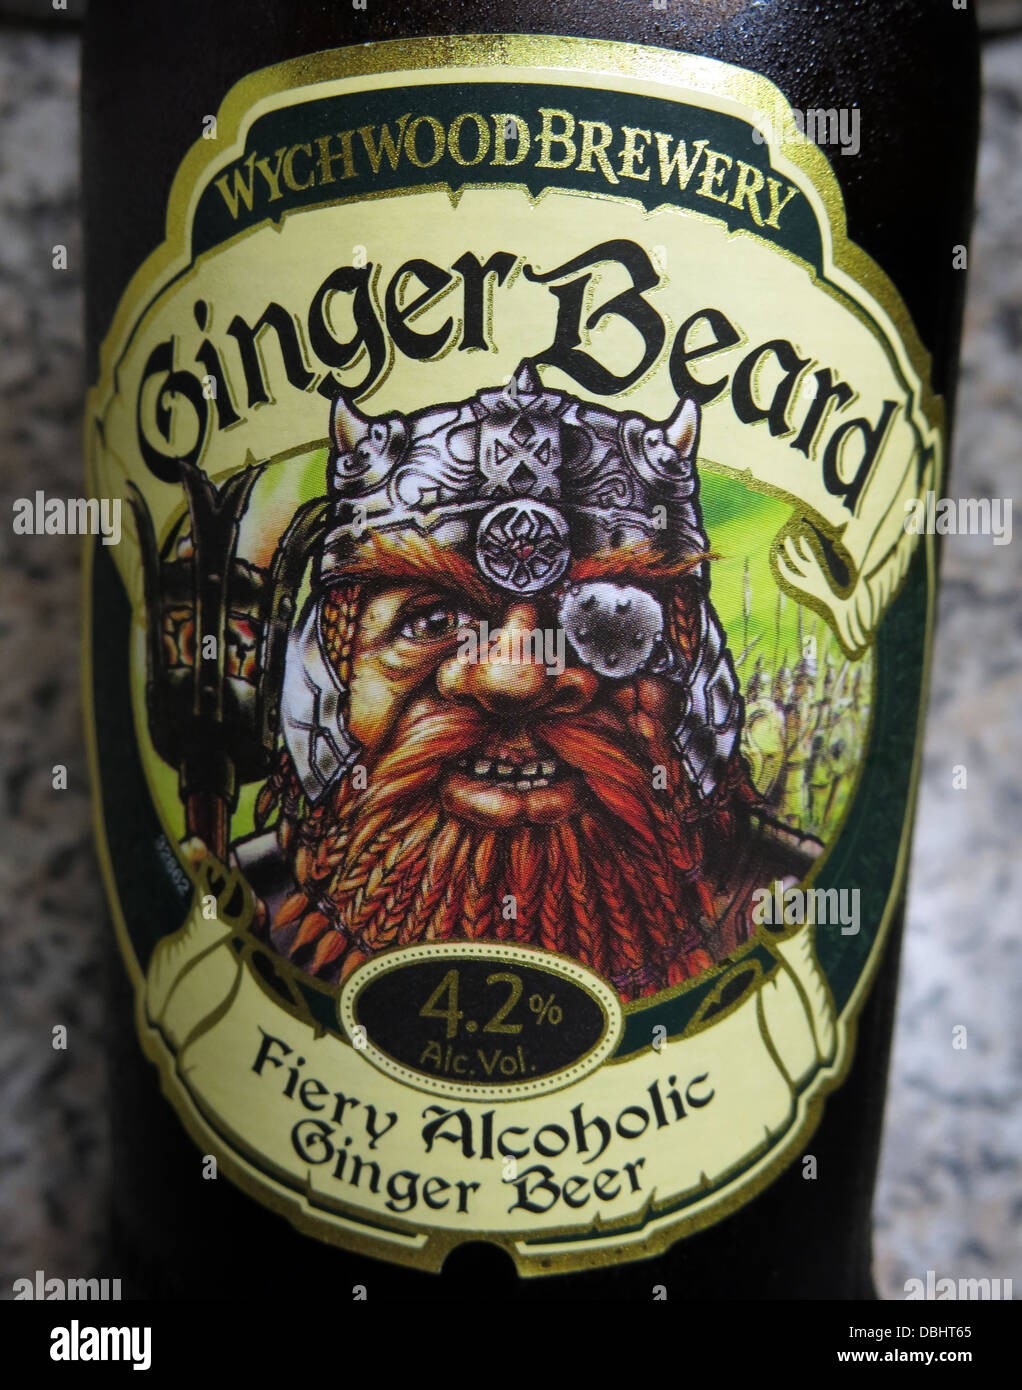 Etichetta della Wychwood Brewery Witney Ginger Beard , una birra allo zenzero alcolica al 4,2%. Prodotto in Oxfordshire , Inghilterra , Gran Bretagna Foto Stock